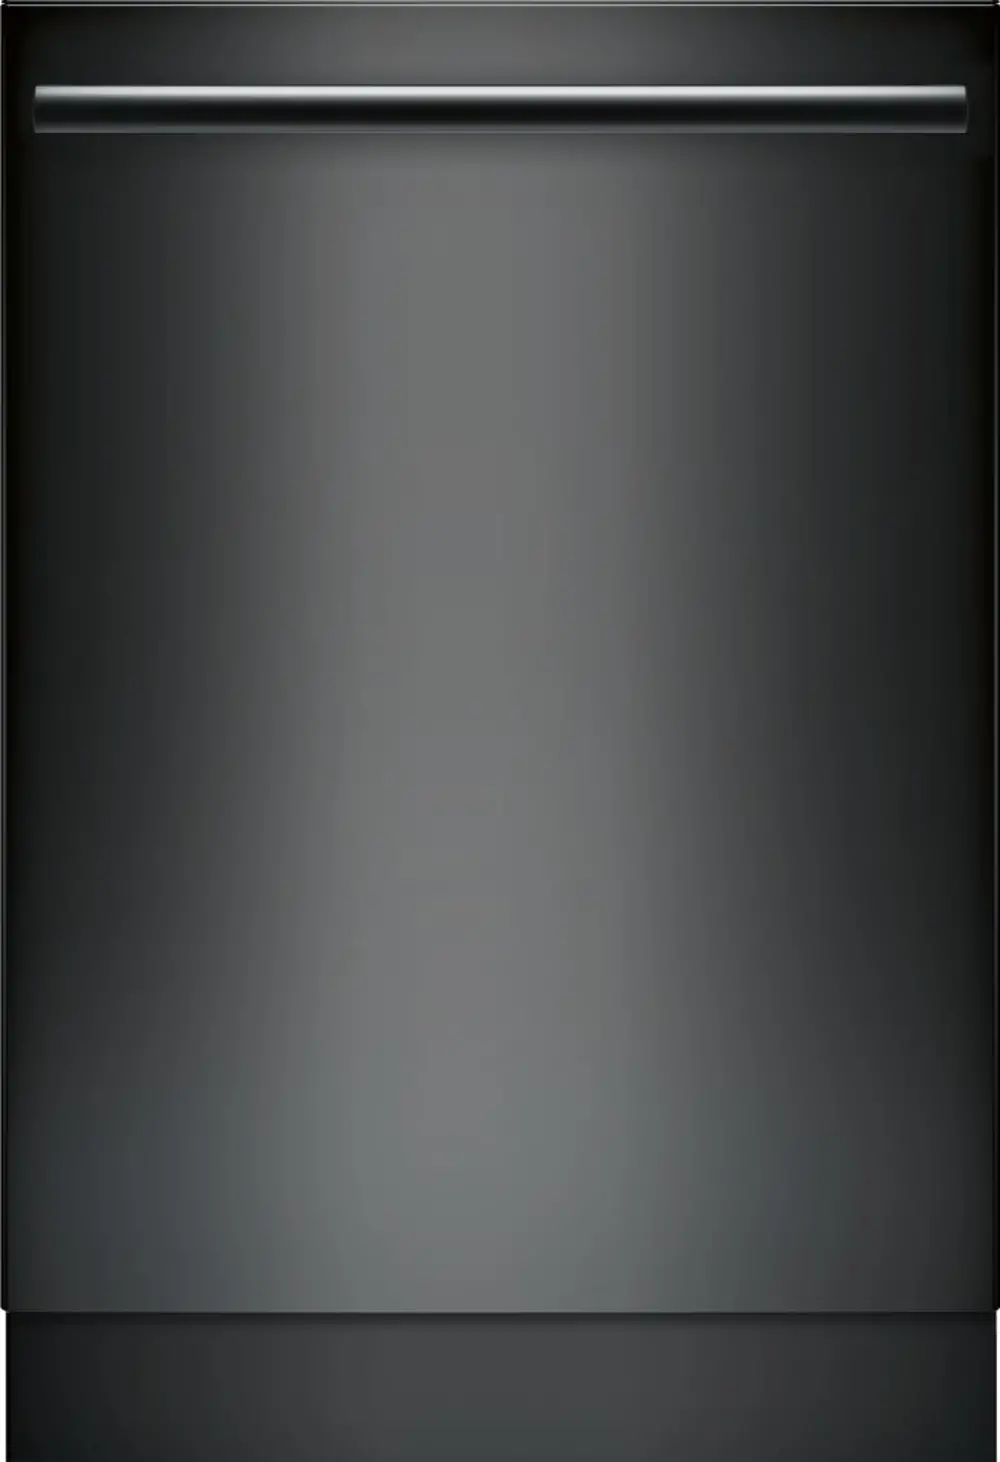 SHX5AV56UC Bosch Ascenta 24 Inch Dishwasher - Black-1